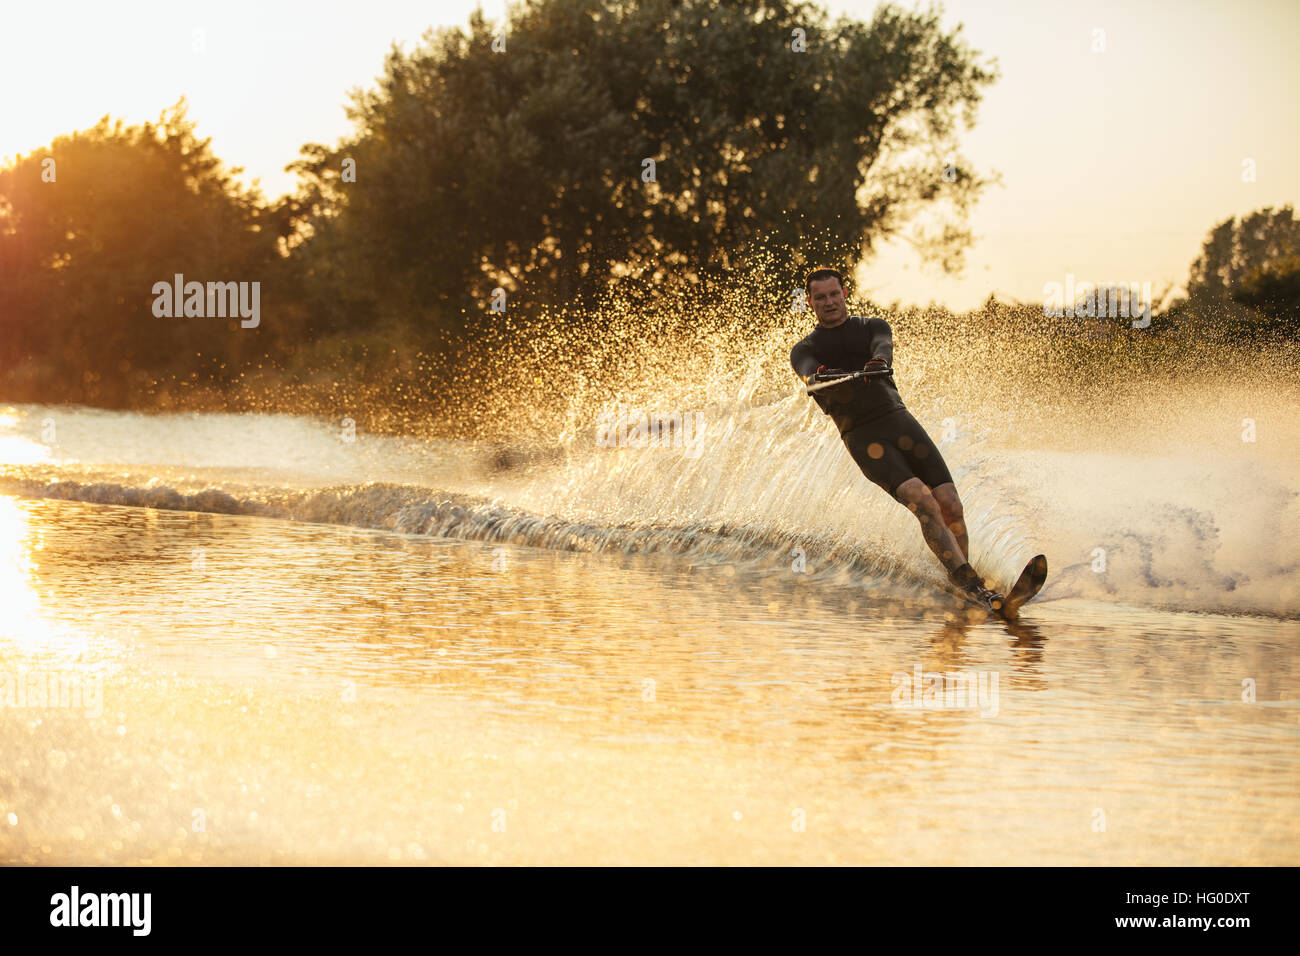 Mann Wakeboarden an einem See mit Spritzer Wasser. Wakeboarder Surfen über den See. Stockfoto